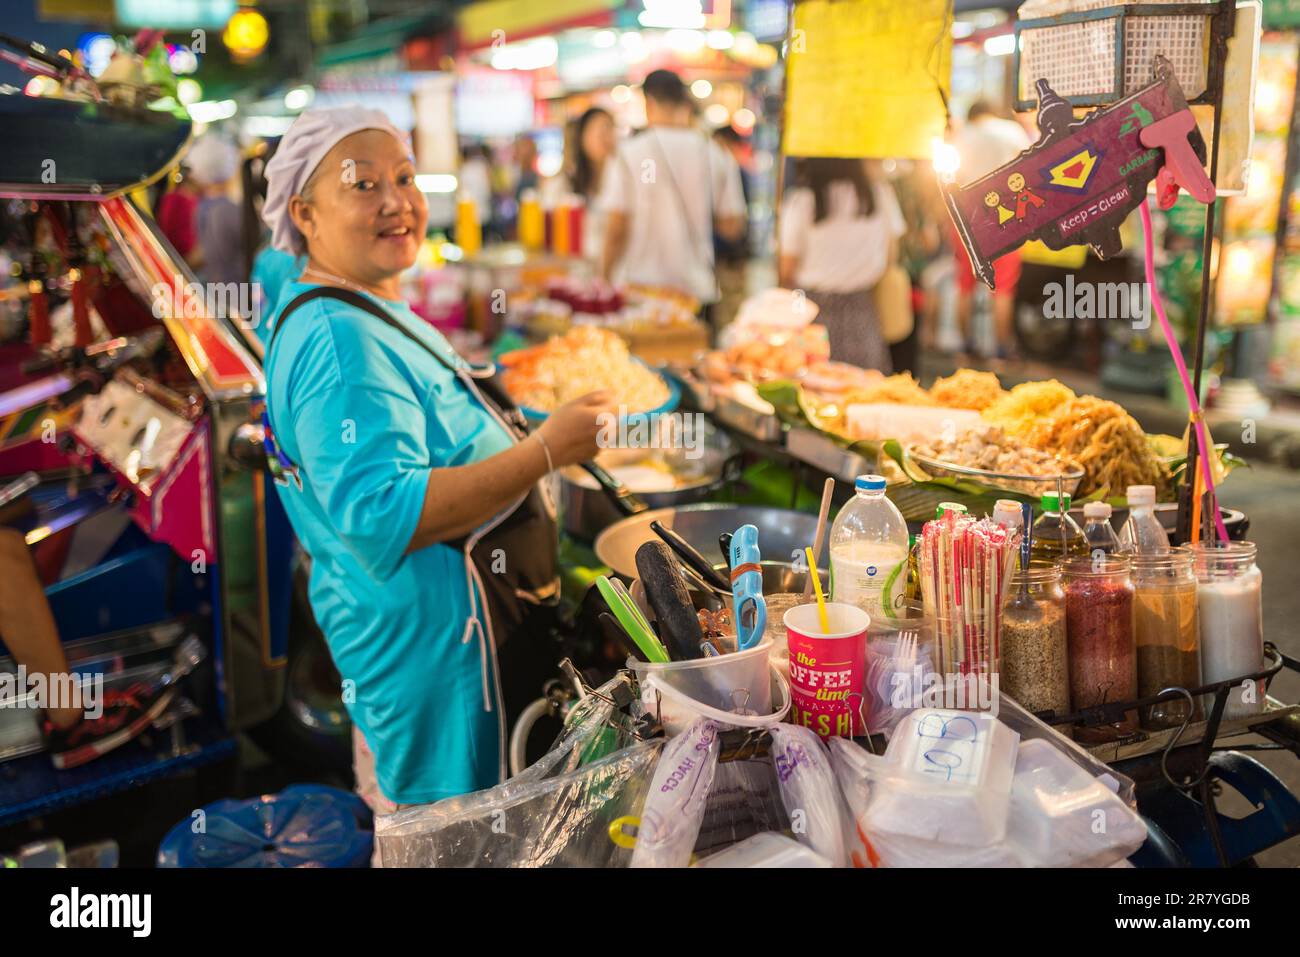 Il s'agit d'un vétéran de la gastronomie dans le quartier des routards Bang Lamphu, avec la célèbre route de Khaosan à Bangkok Banque D'Images